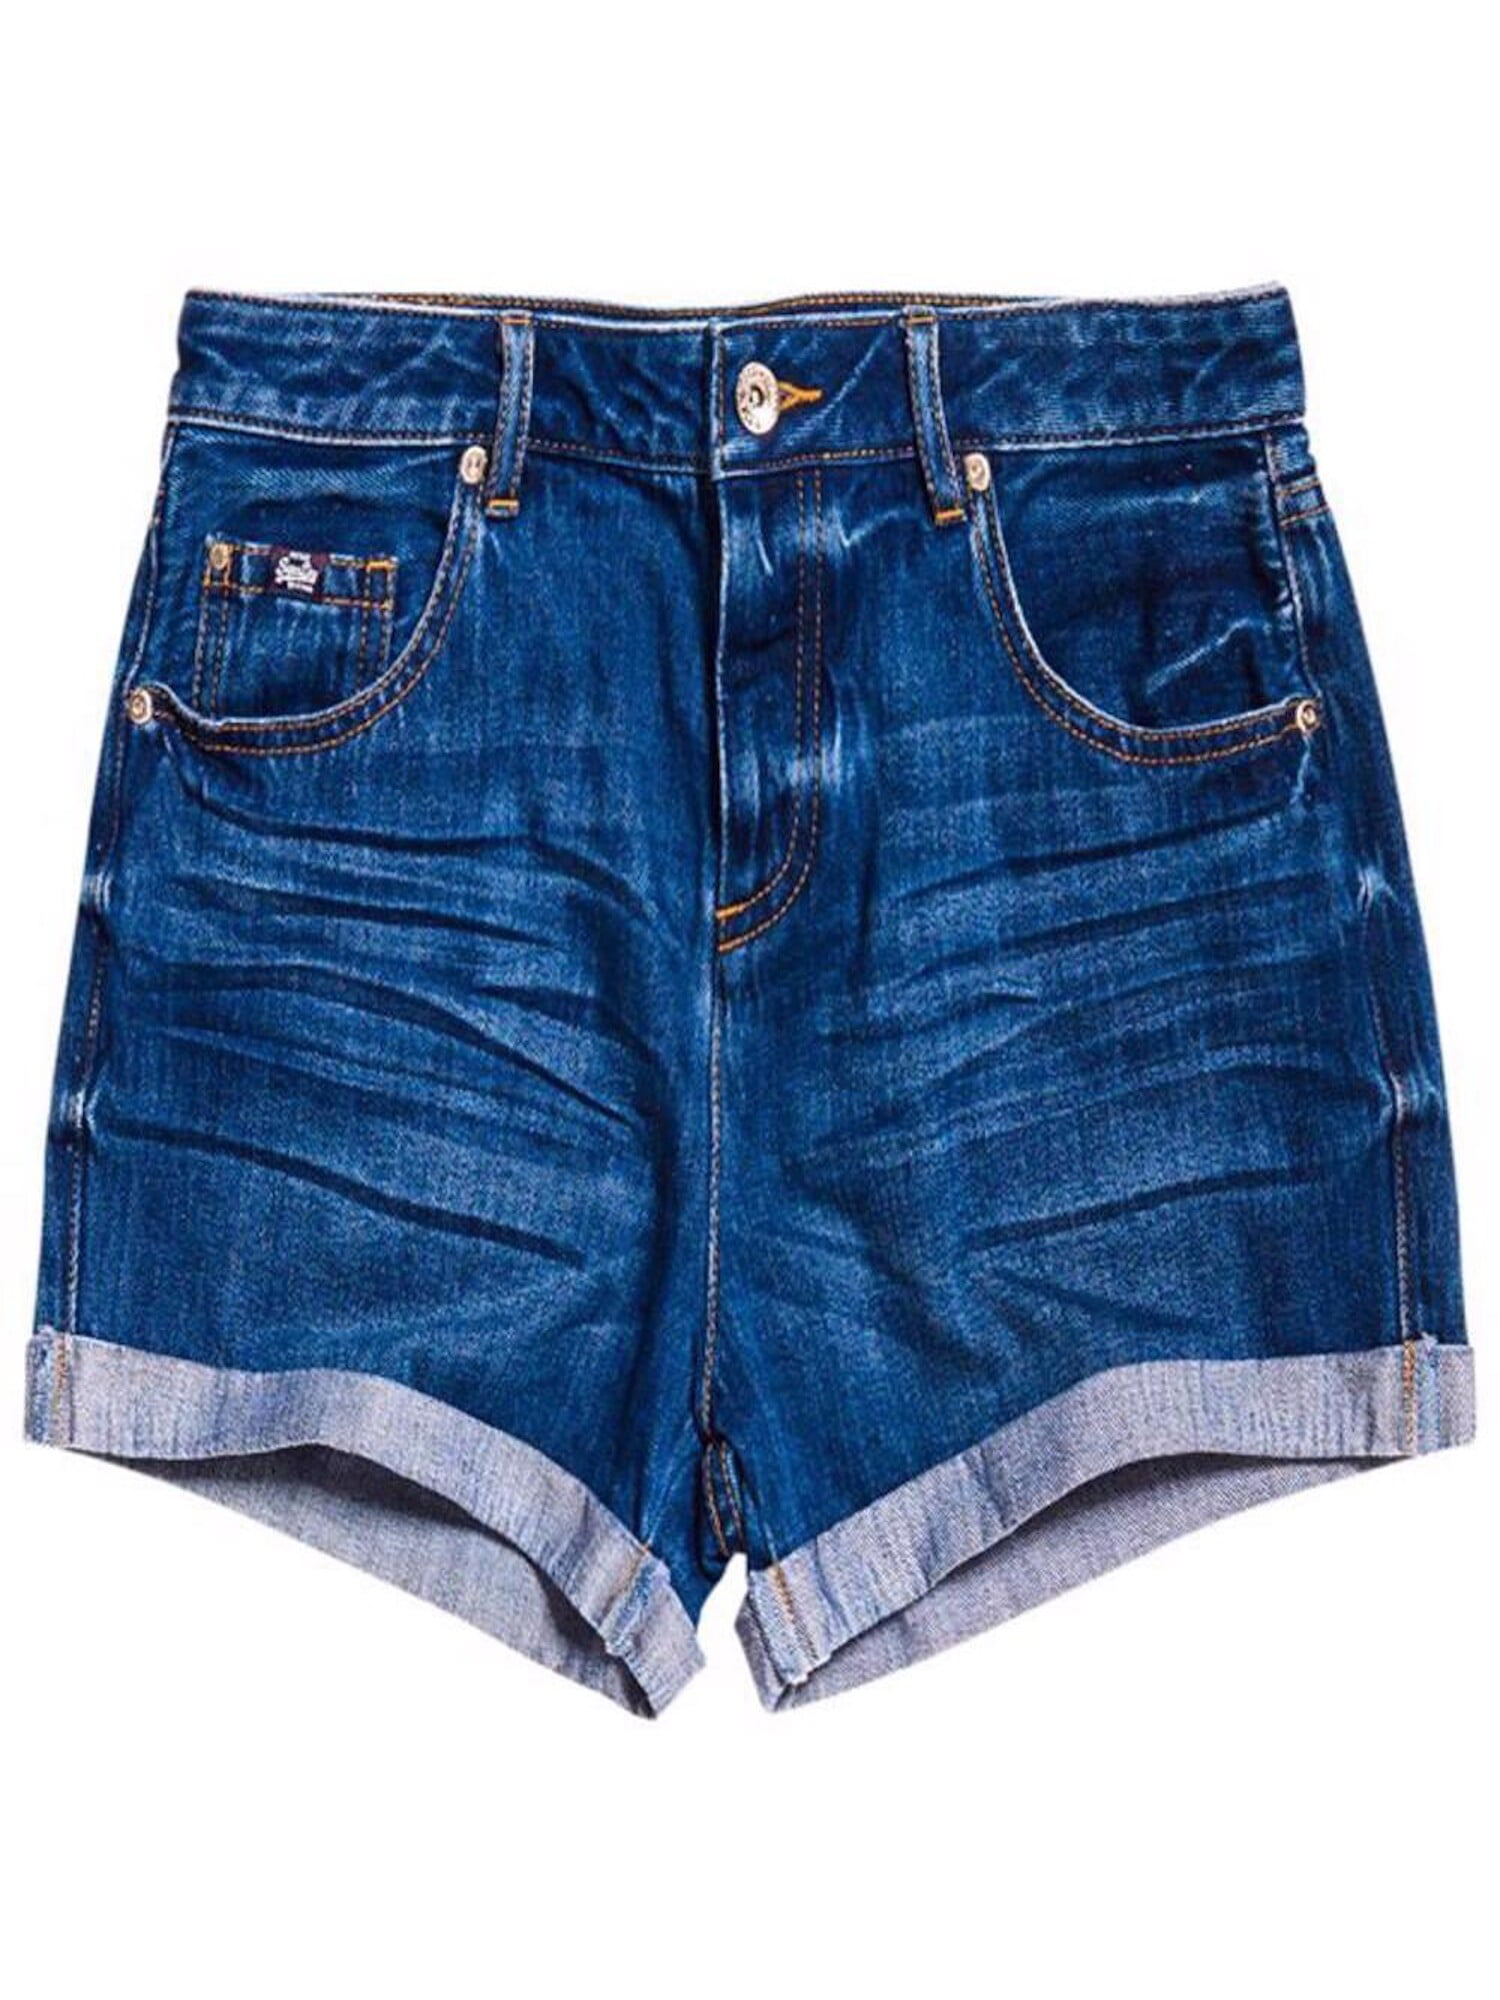 8 6-8 Ladies Superdry Boyfriend Shorts Sizes 25 26 Faded Blue Denim BNWT 